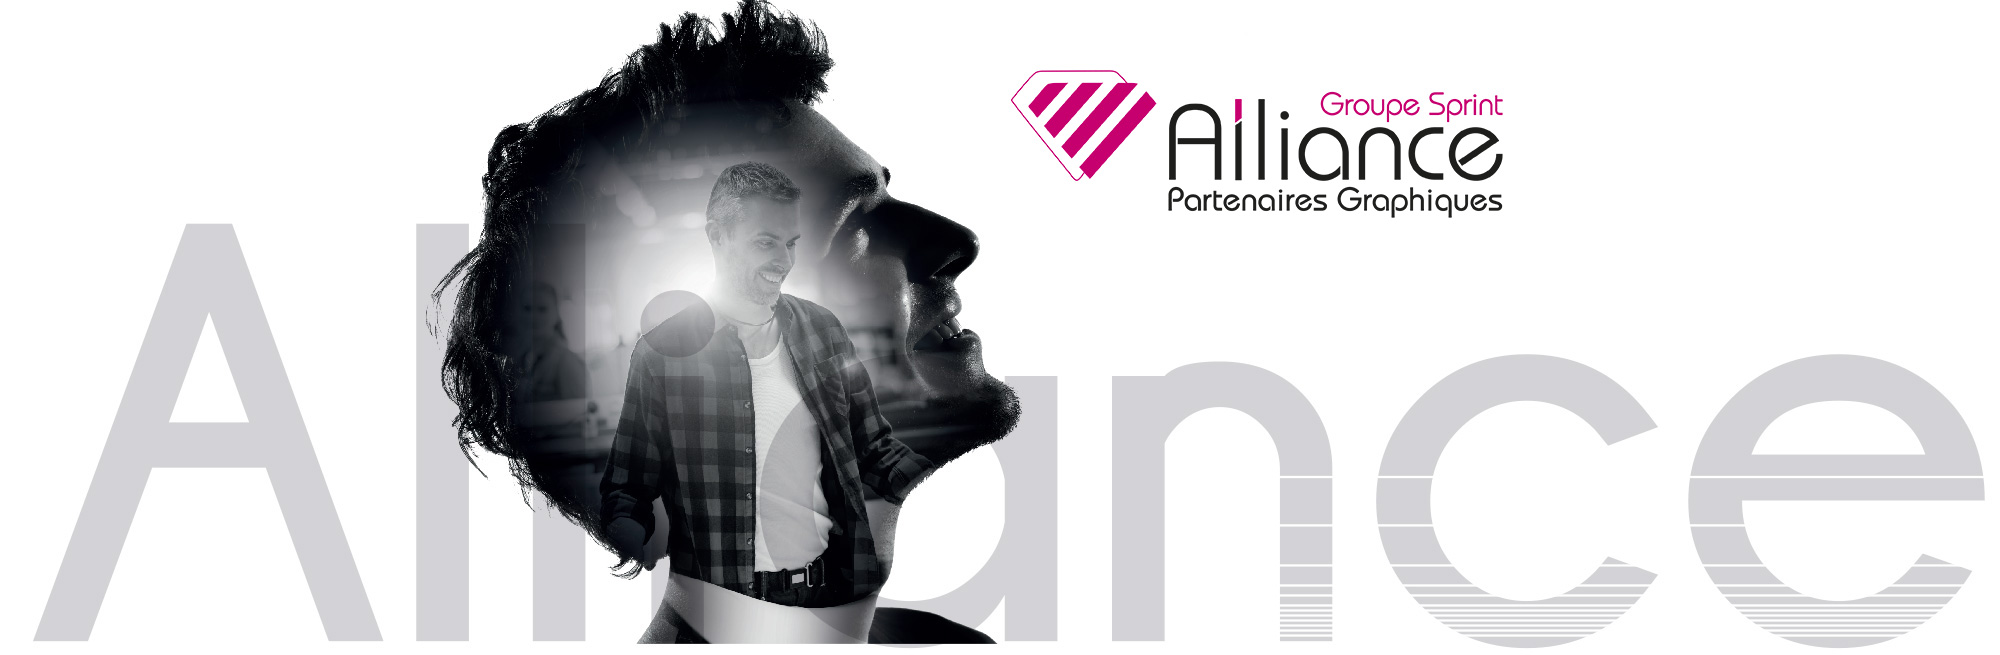 Alliance Partenaires Graphiques, imprimerie offset, numérique, grand format dans l'Aisne et la Marne